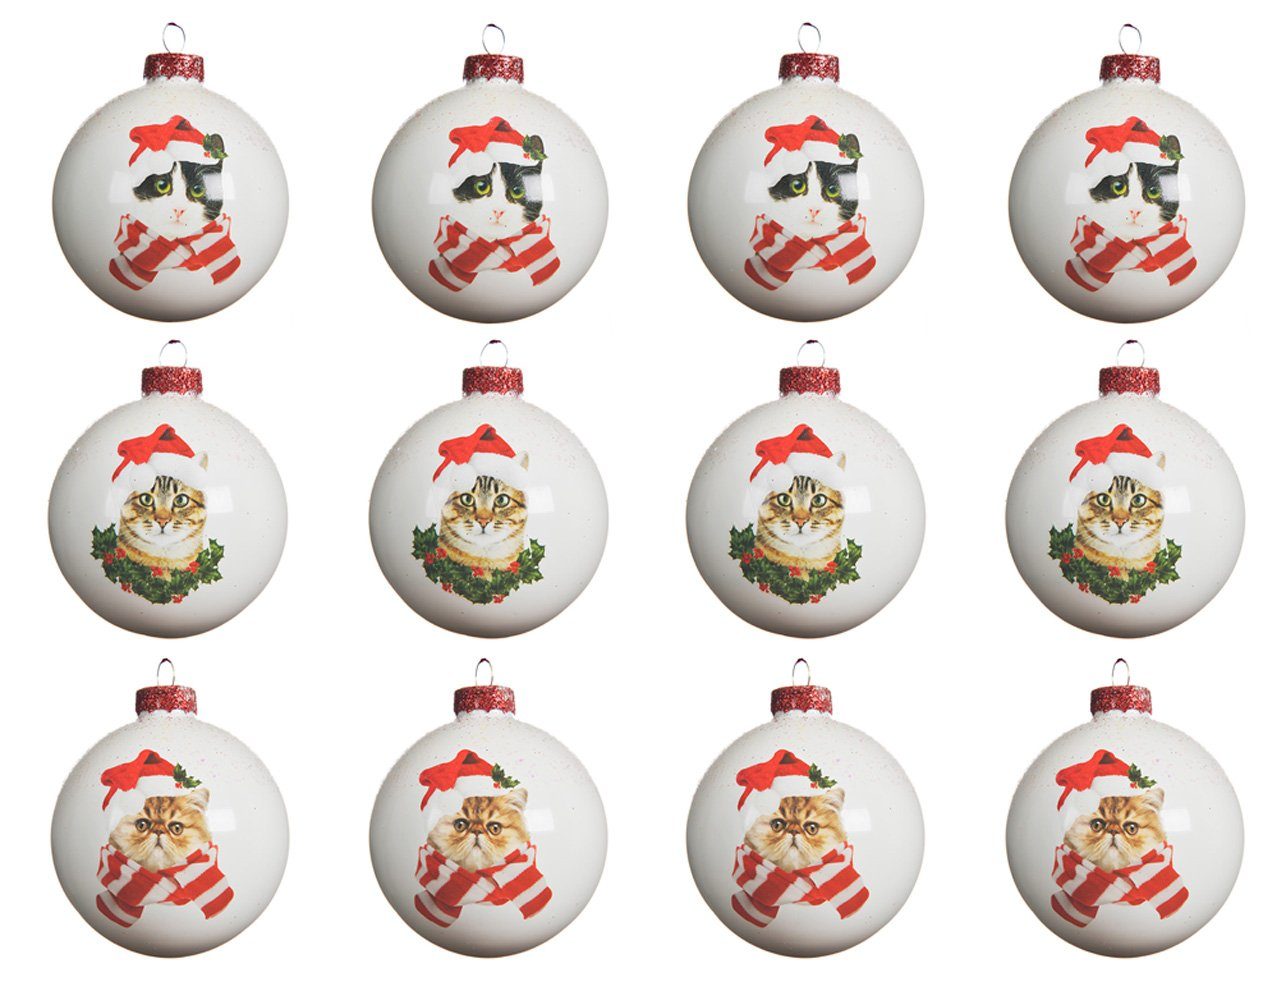 Decoris season decorations Weihnachtsbaumkugel, Weihnachtskugeln Glas mit Katzen Motiv 8cm weiß, 12er Set